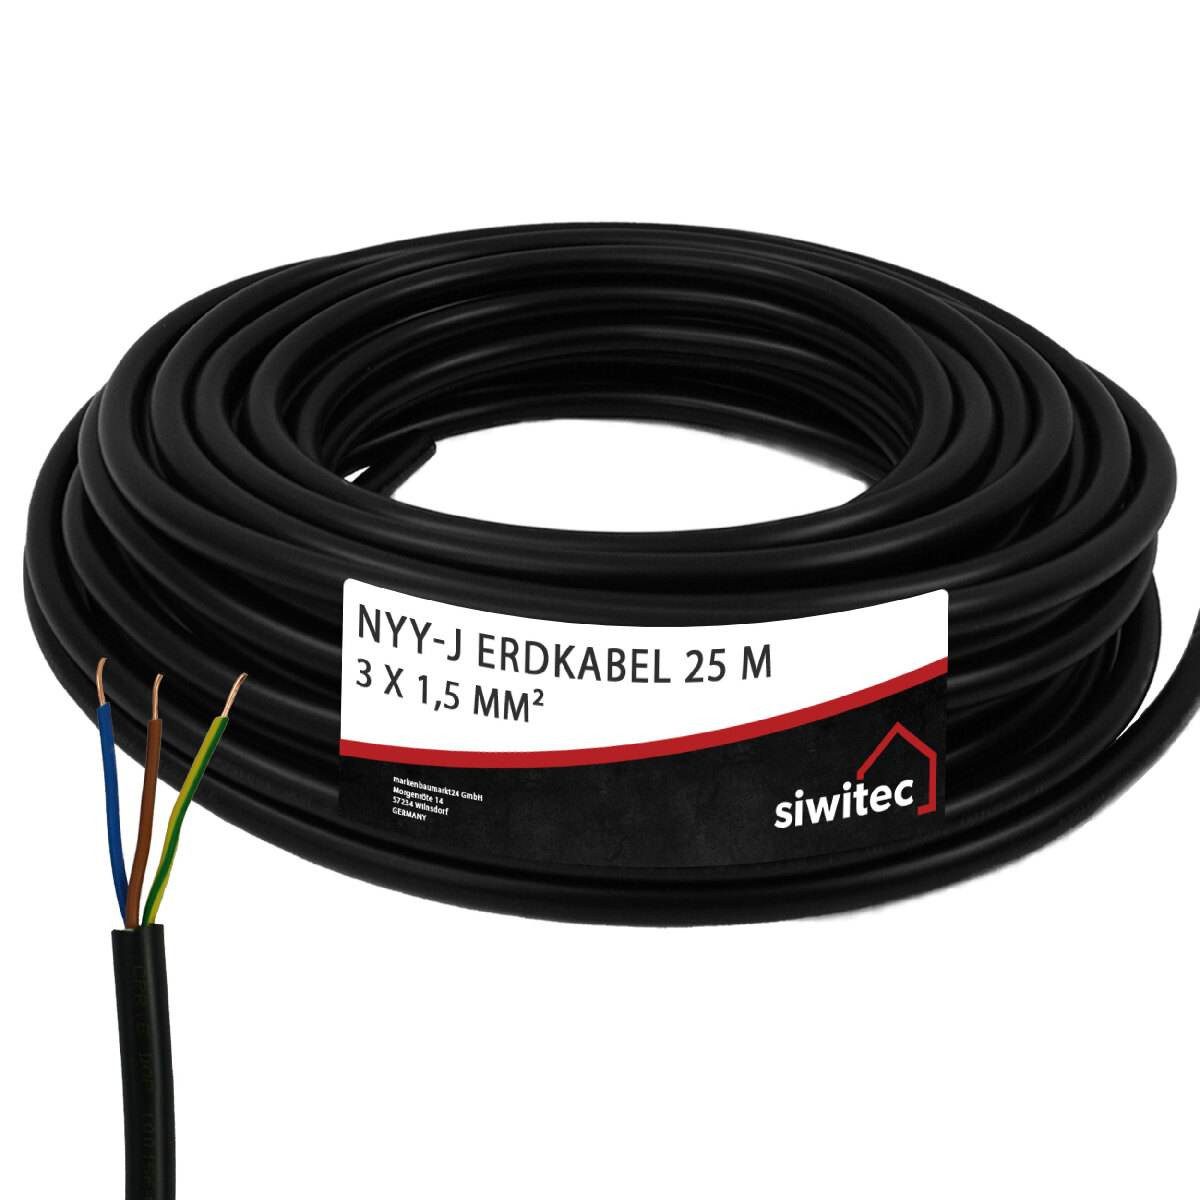 siwitec NYY-Kabel mit 3 Adern und 1,5 mm² Aderquerschnitt in 25 m Länge Erdkabel, NYY-Kabel, (2500 cm), Universell einsetzbar, 3-adrig, Polyvinylchlorid, Made in Germany